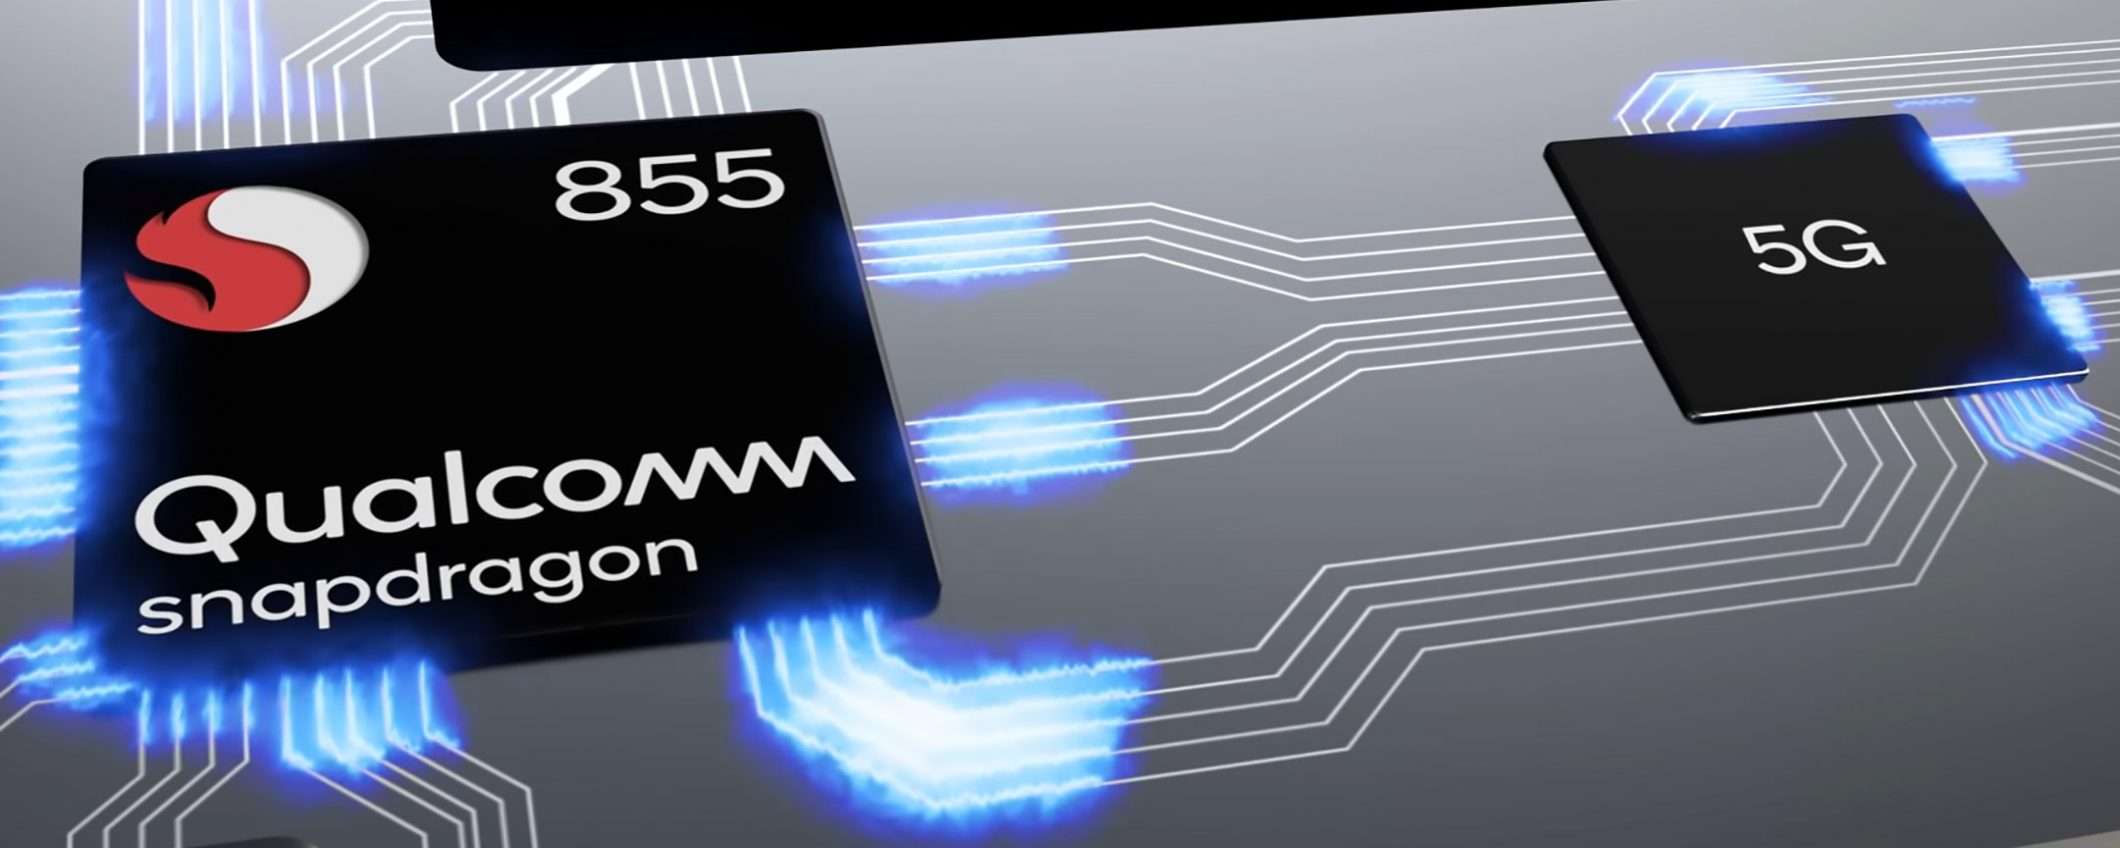 Qualcomm Snapdragon 855: pronto per il 5G